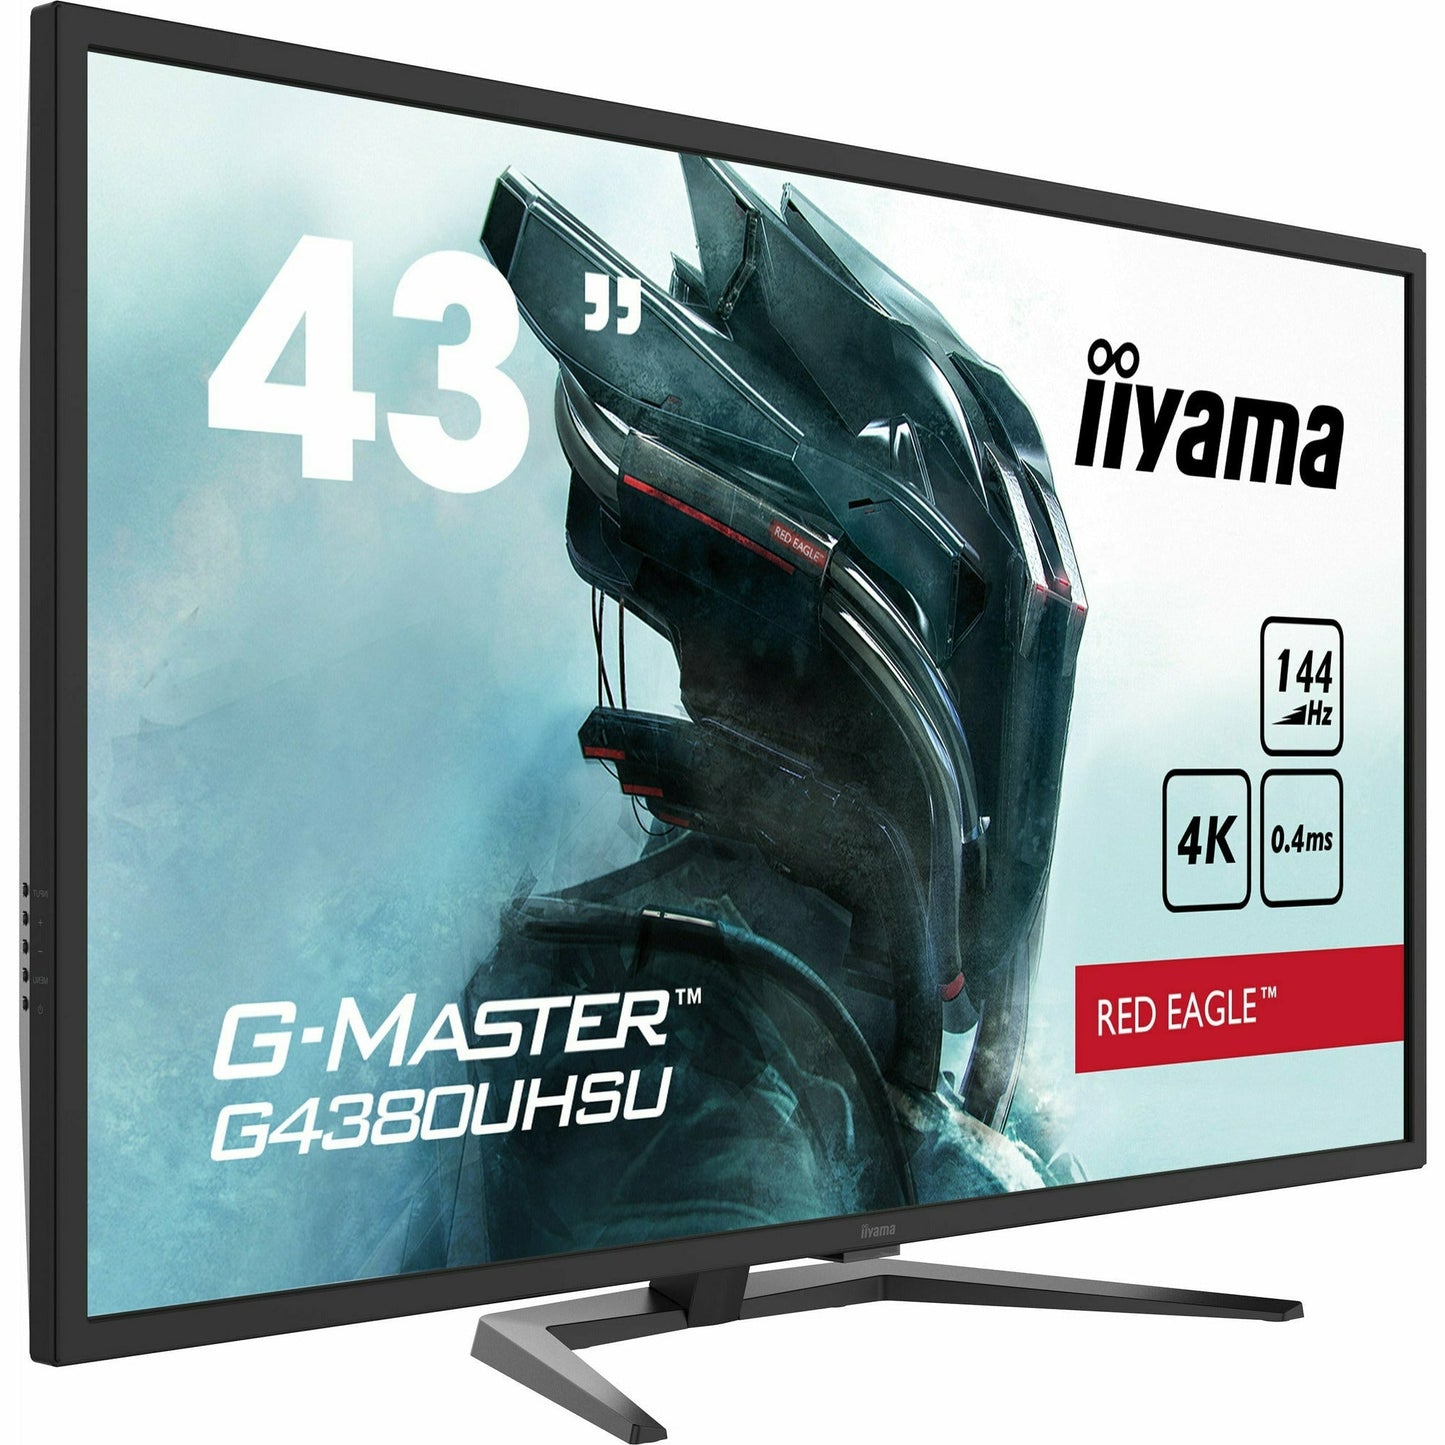 Dark Slate Gray iiyama G-Master G4380UHSU-B1 43" VA LCD Gaming Monitor